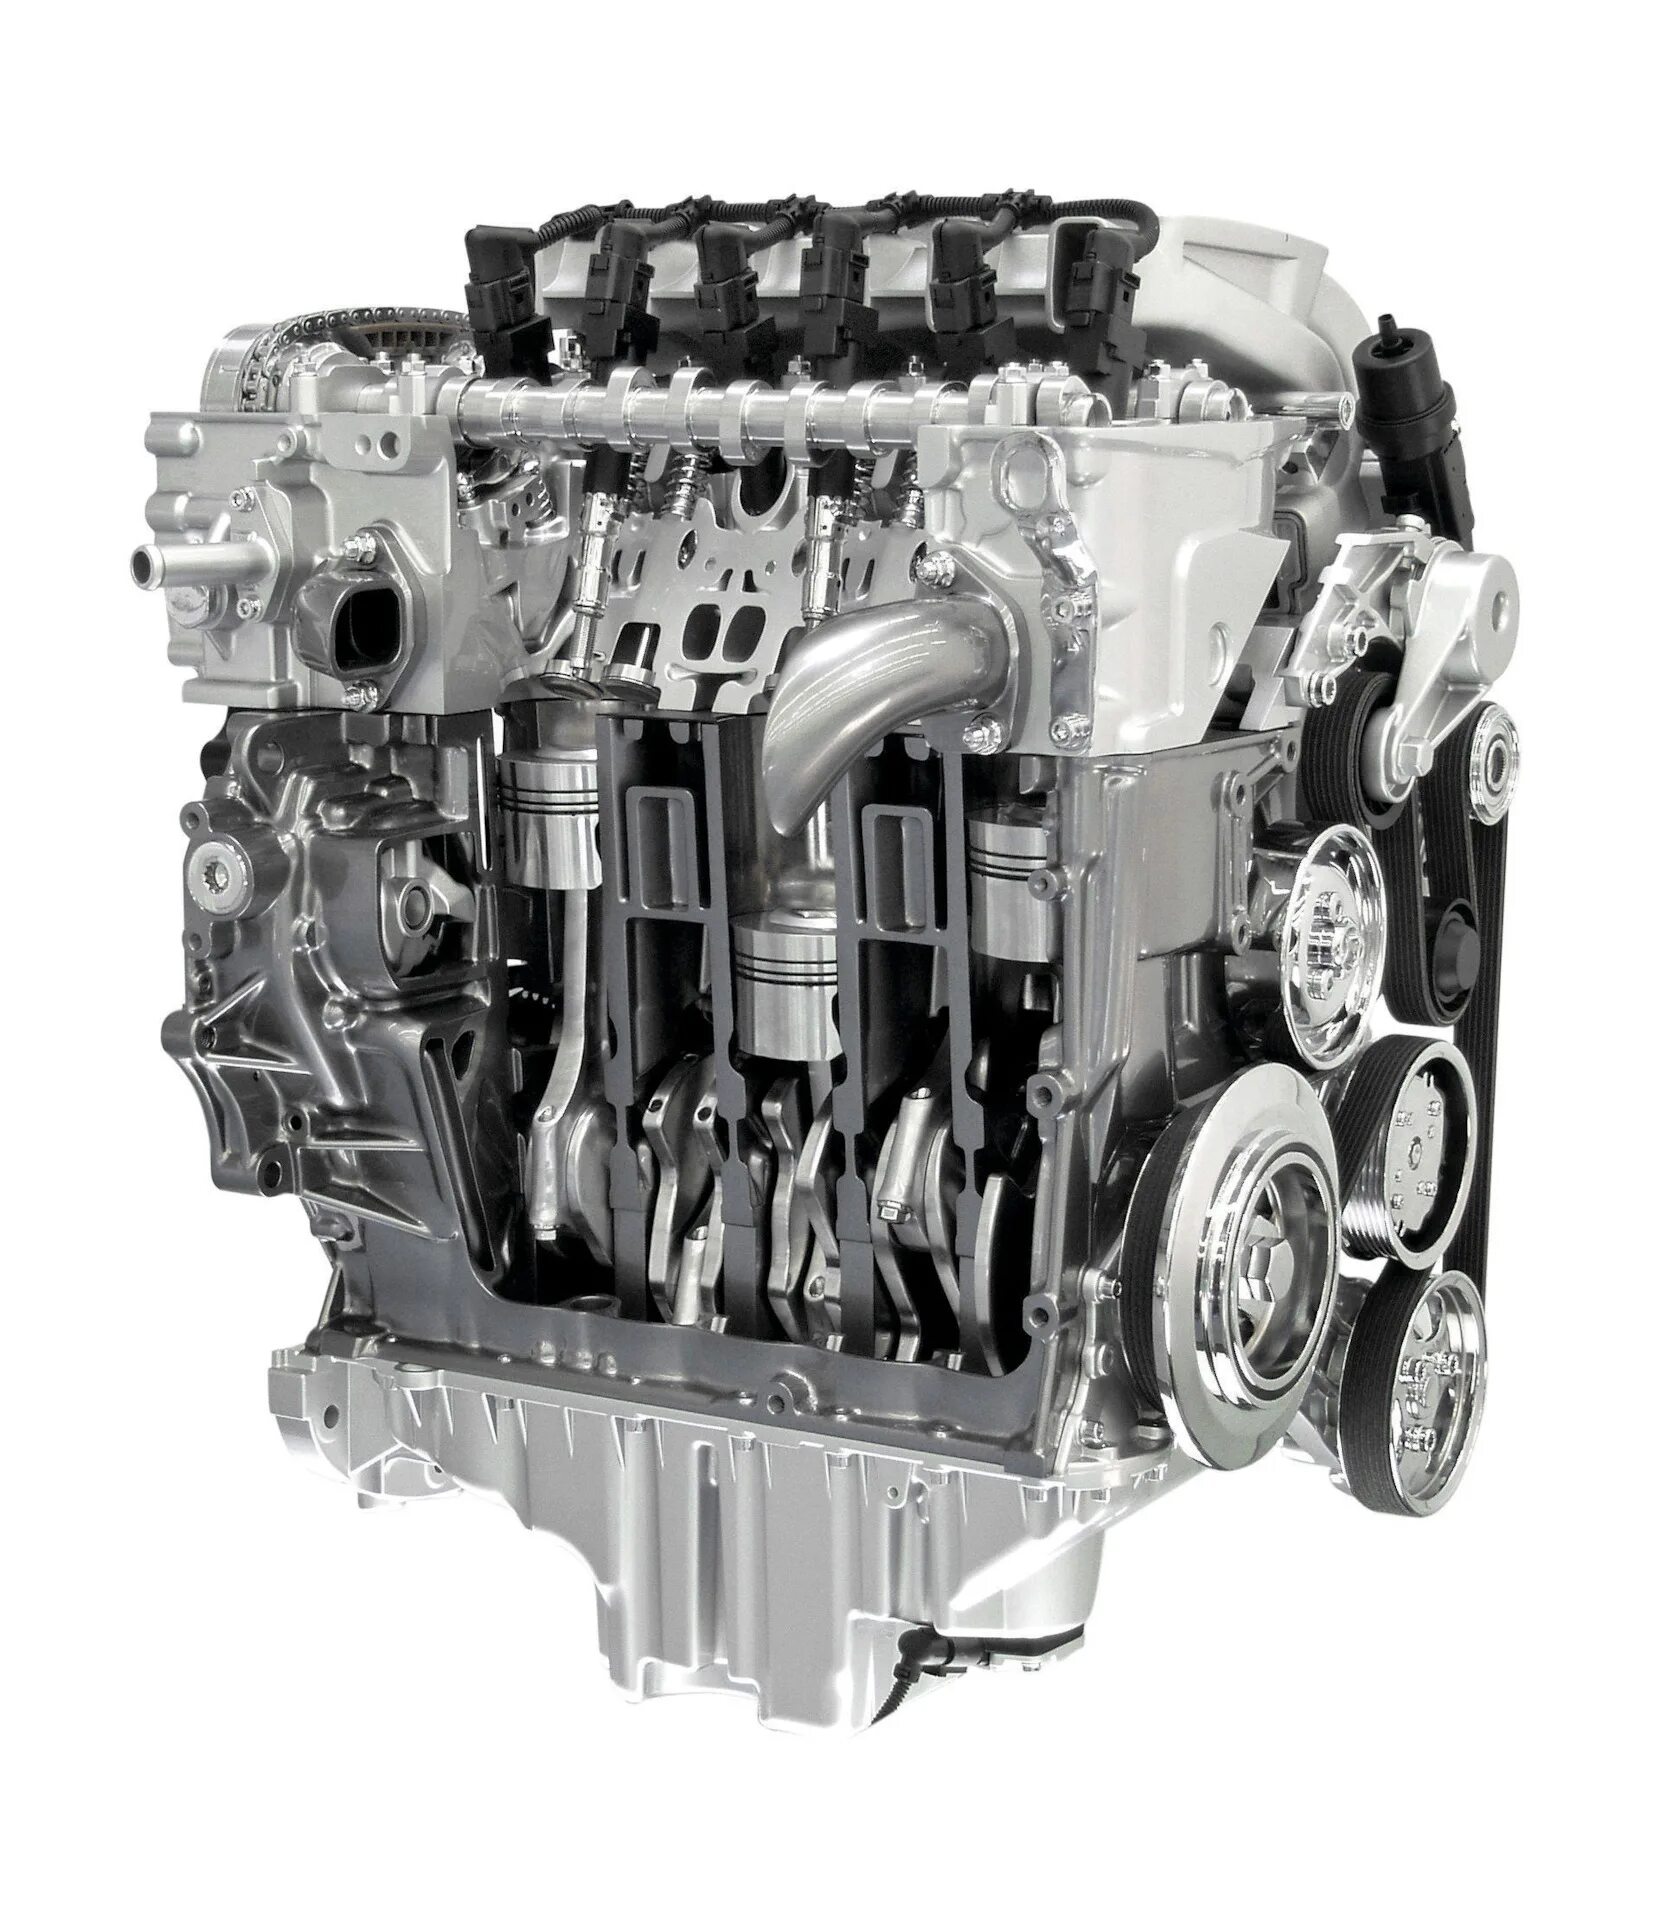 Volkswagen touareg моторы. ДВС vr6 Фольксваген. Двигатель 3 6 Фольксваген Туарег. Vr6 3.2 Туарег. ВР 6 мотор Туарег.